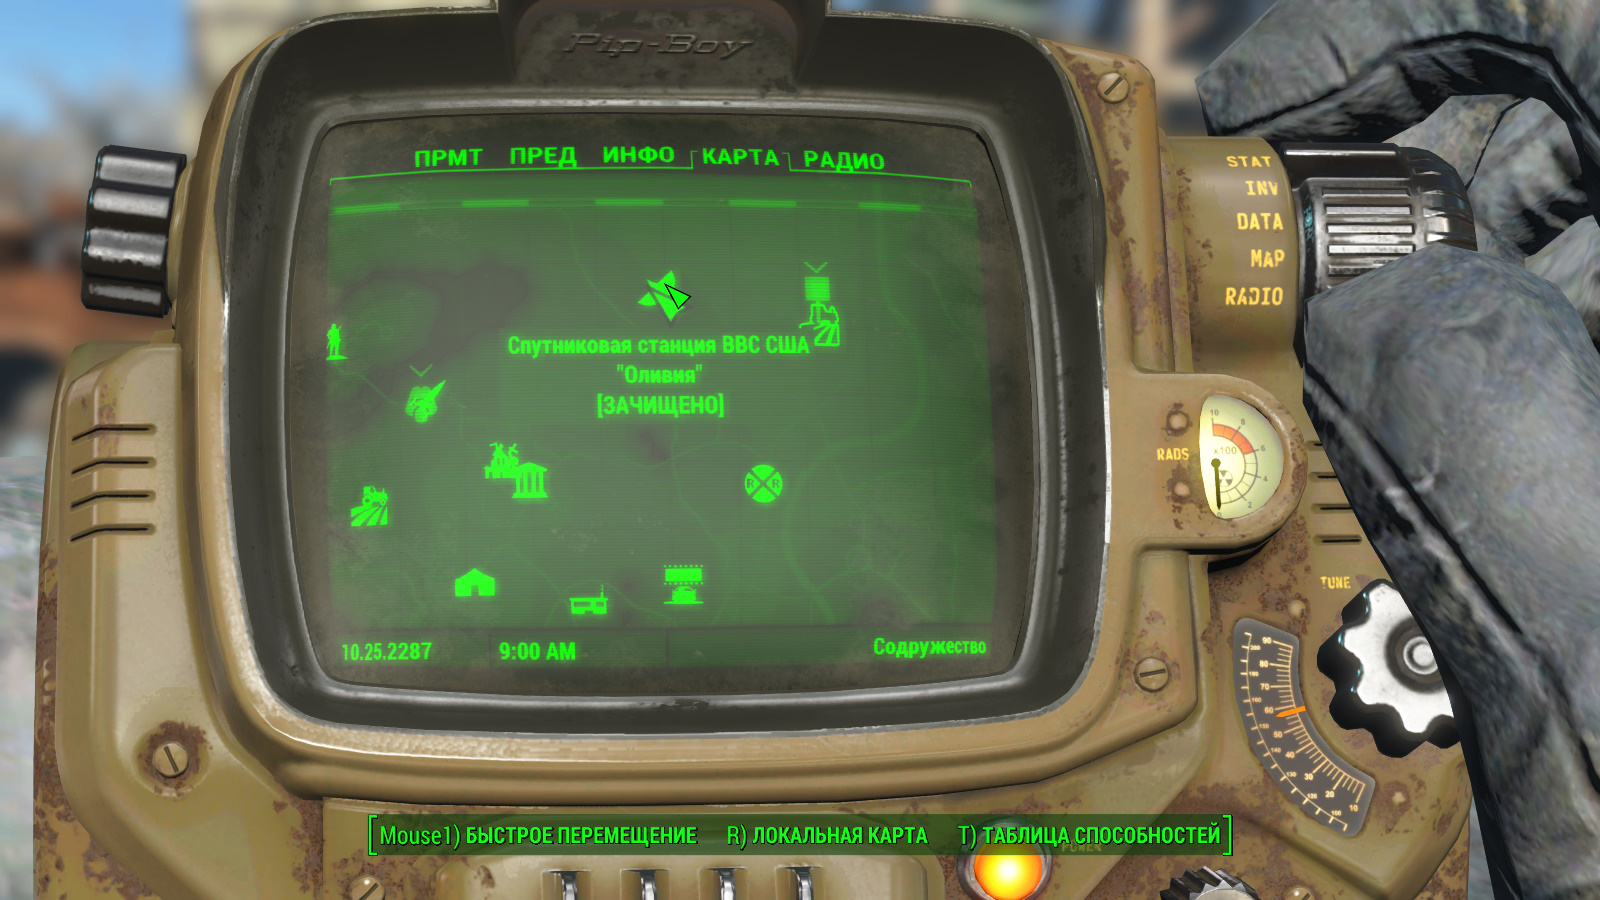 Fallout 4 спутниковая станция ввс сша оливия комната с данными фото 4